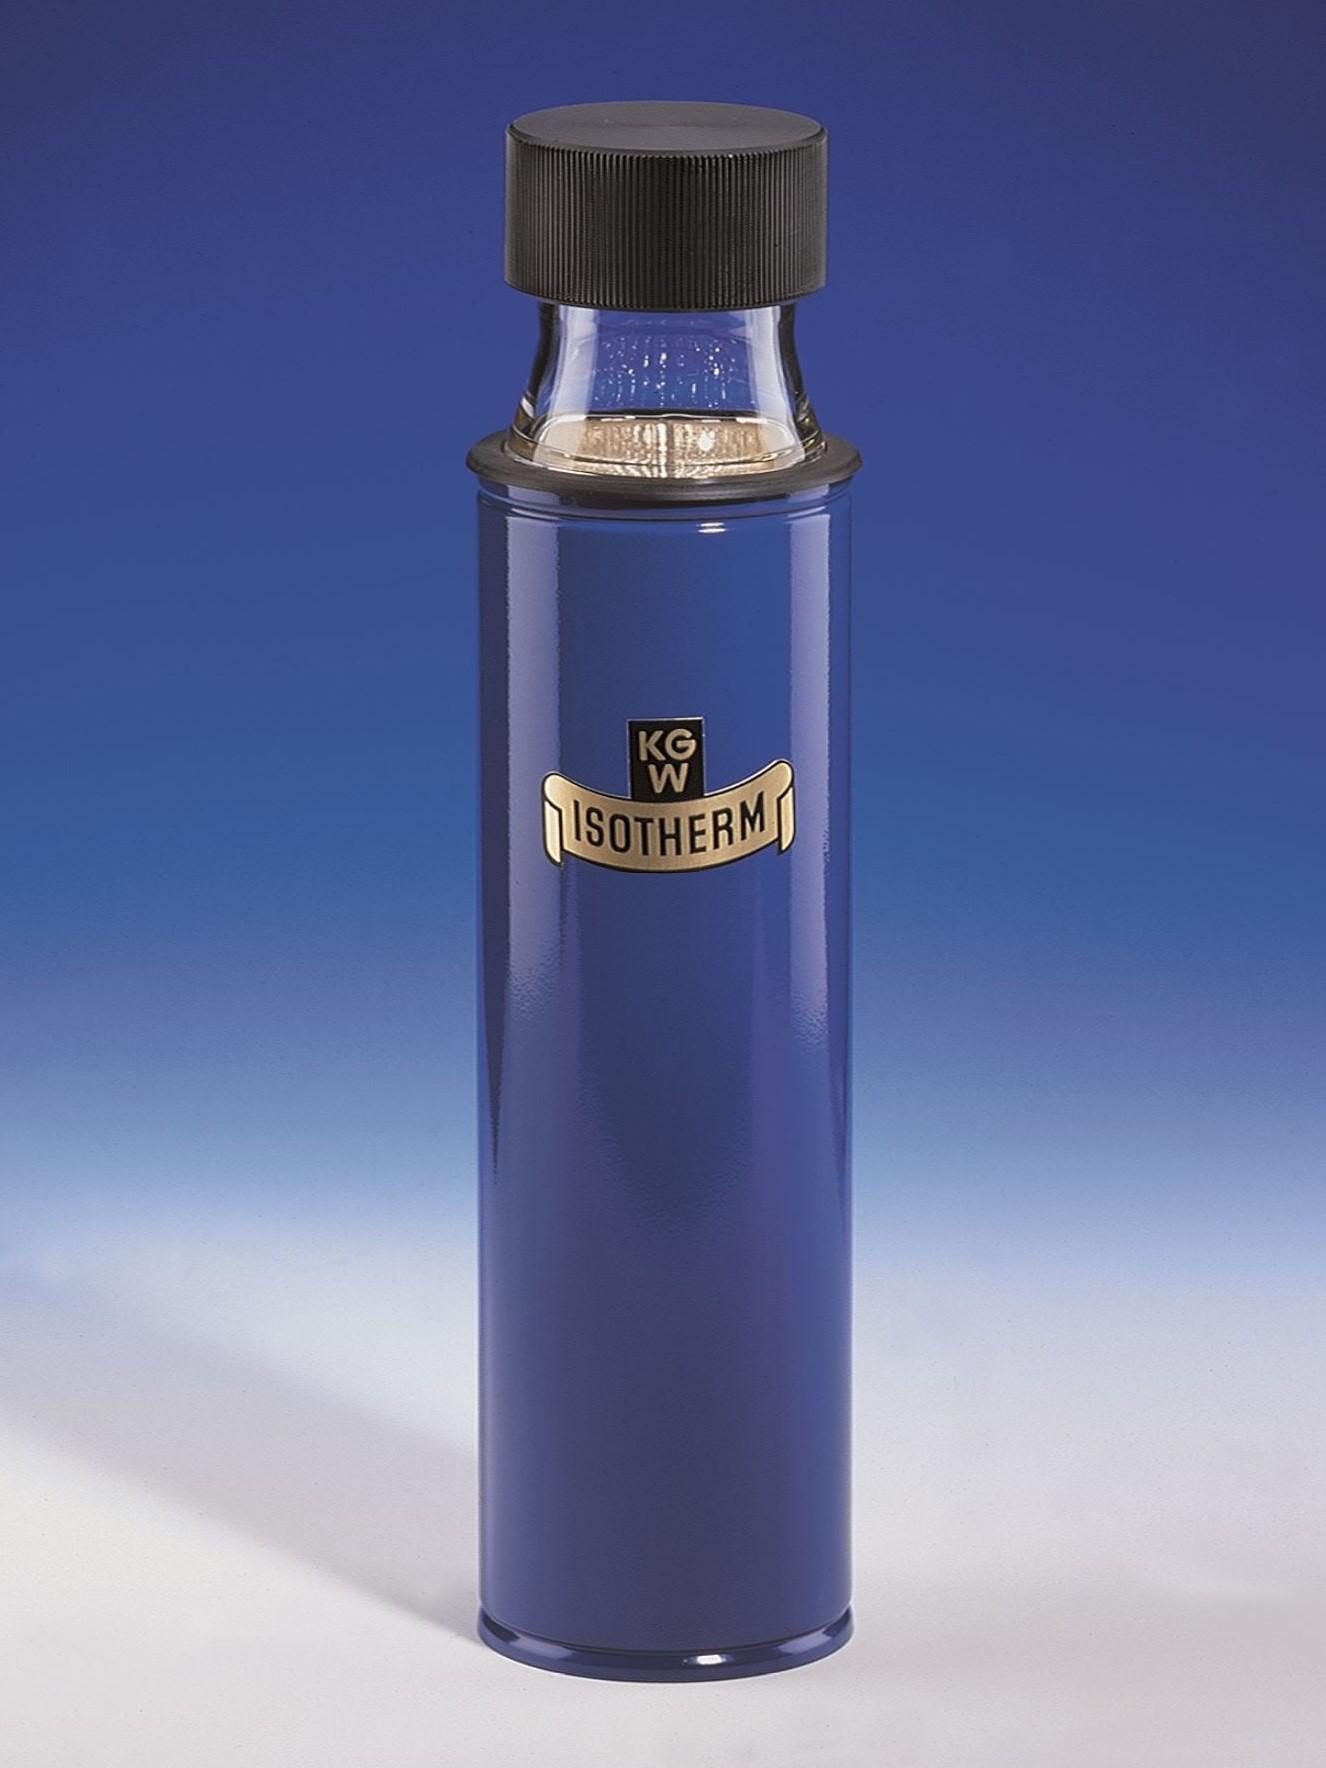 德国KGW-Isotherm-Dewar flasks with standard-glass screw thread GEW-Type GEW系列-带标准玻璃螺纹GEW的杜瓦瓶